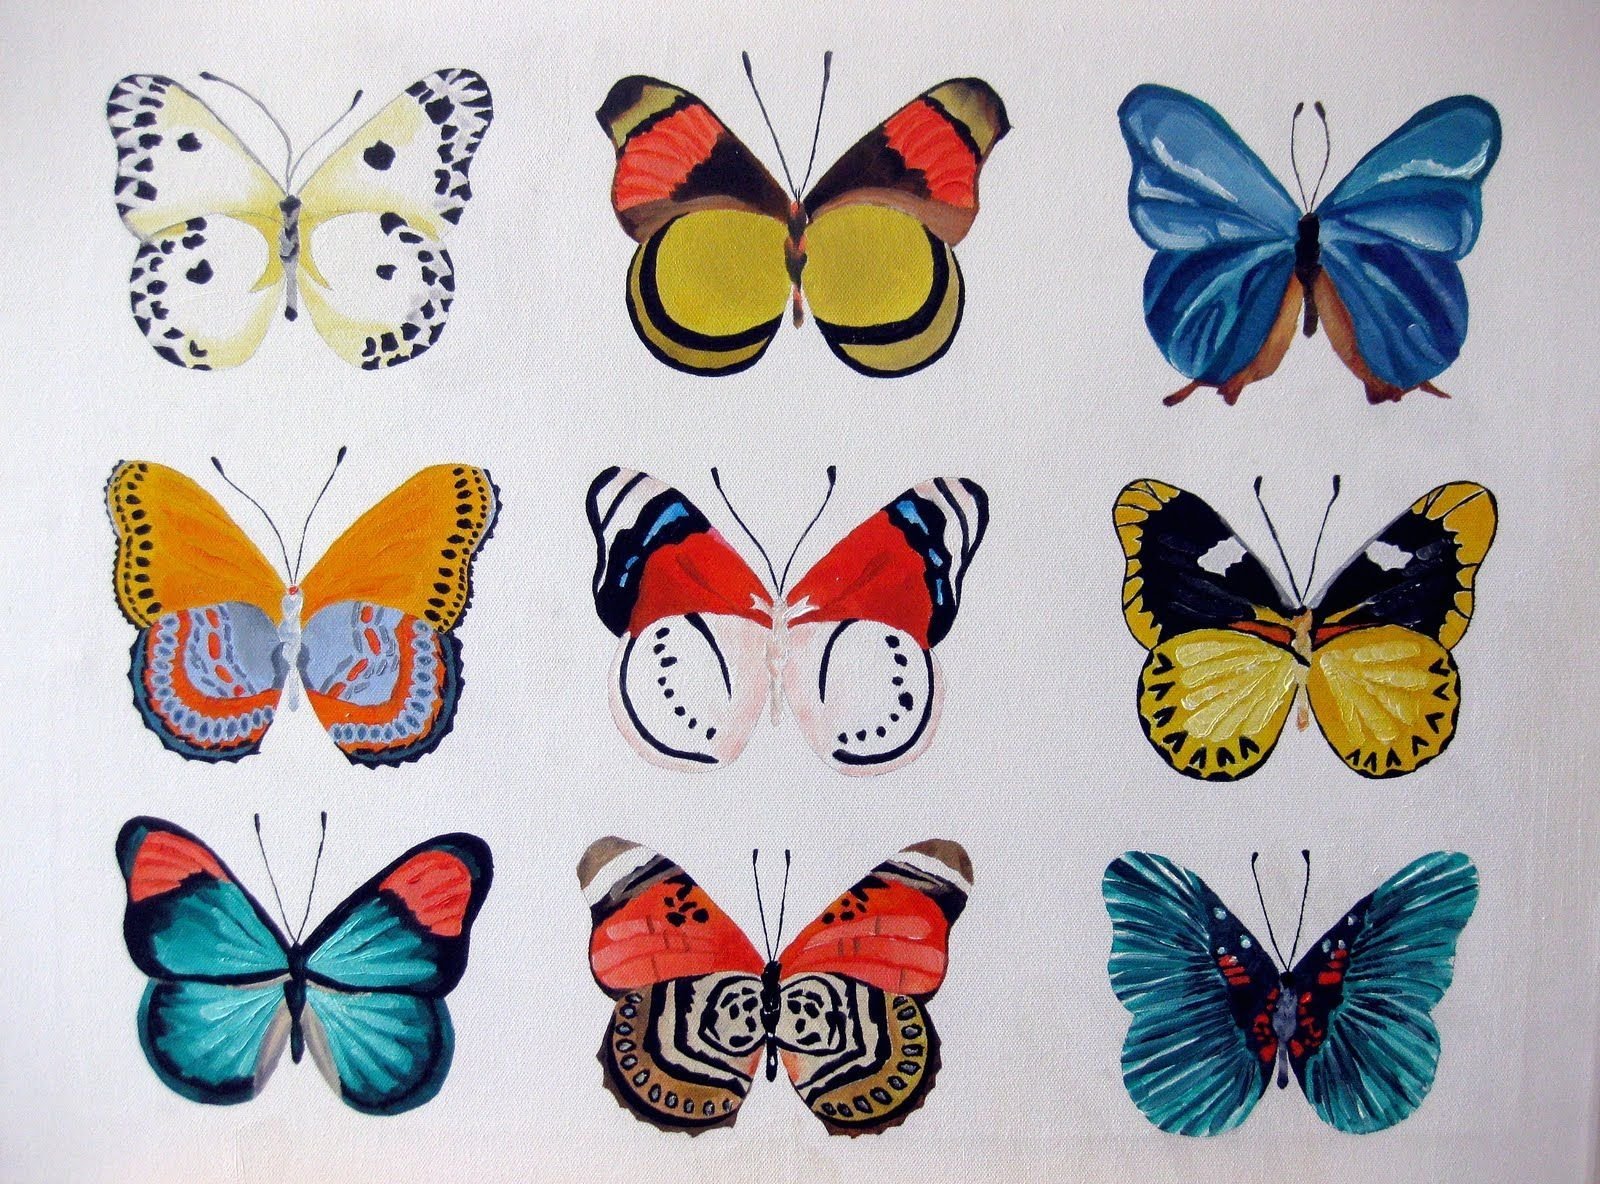 Разные крылья бабочек. Узоры на крыльях бабочки. Узоры бабочек на крыльях для детей. Бабочки занятие для детей. Симметричная бабочка.